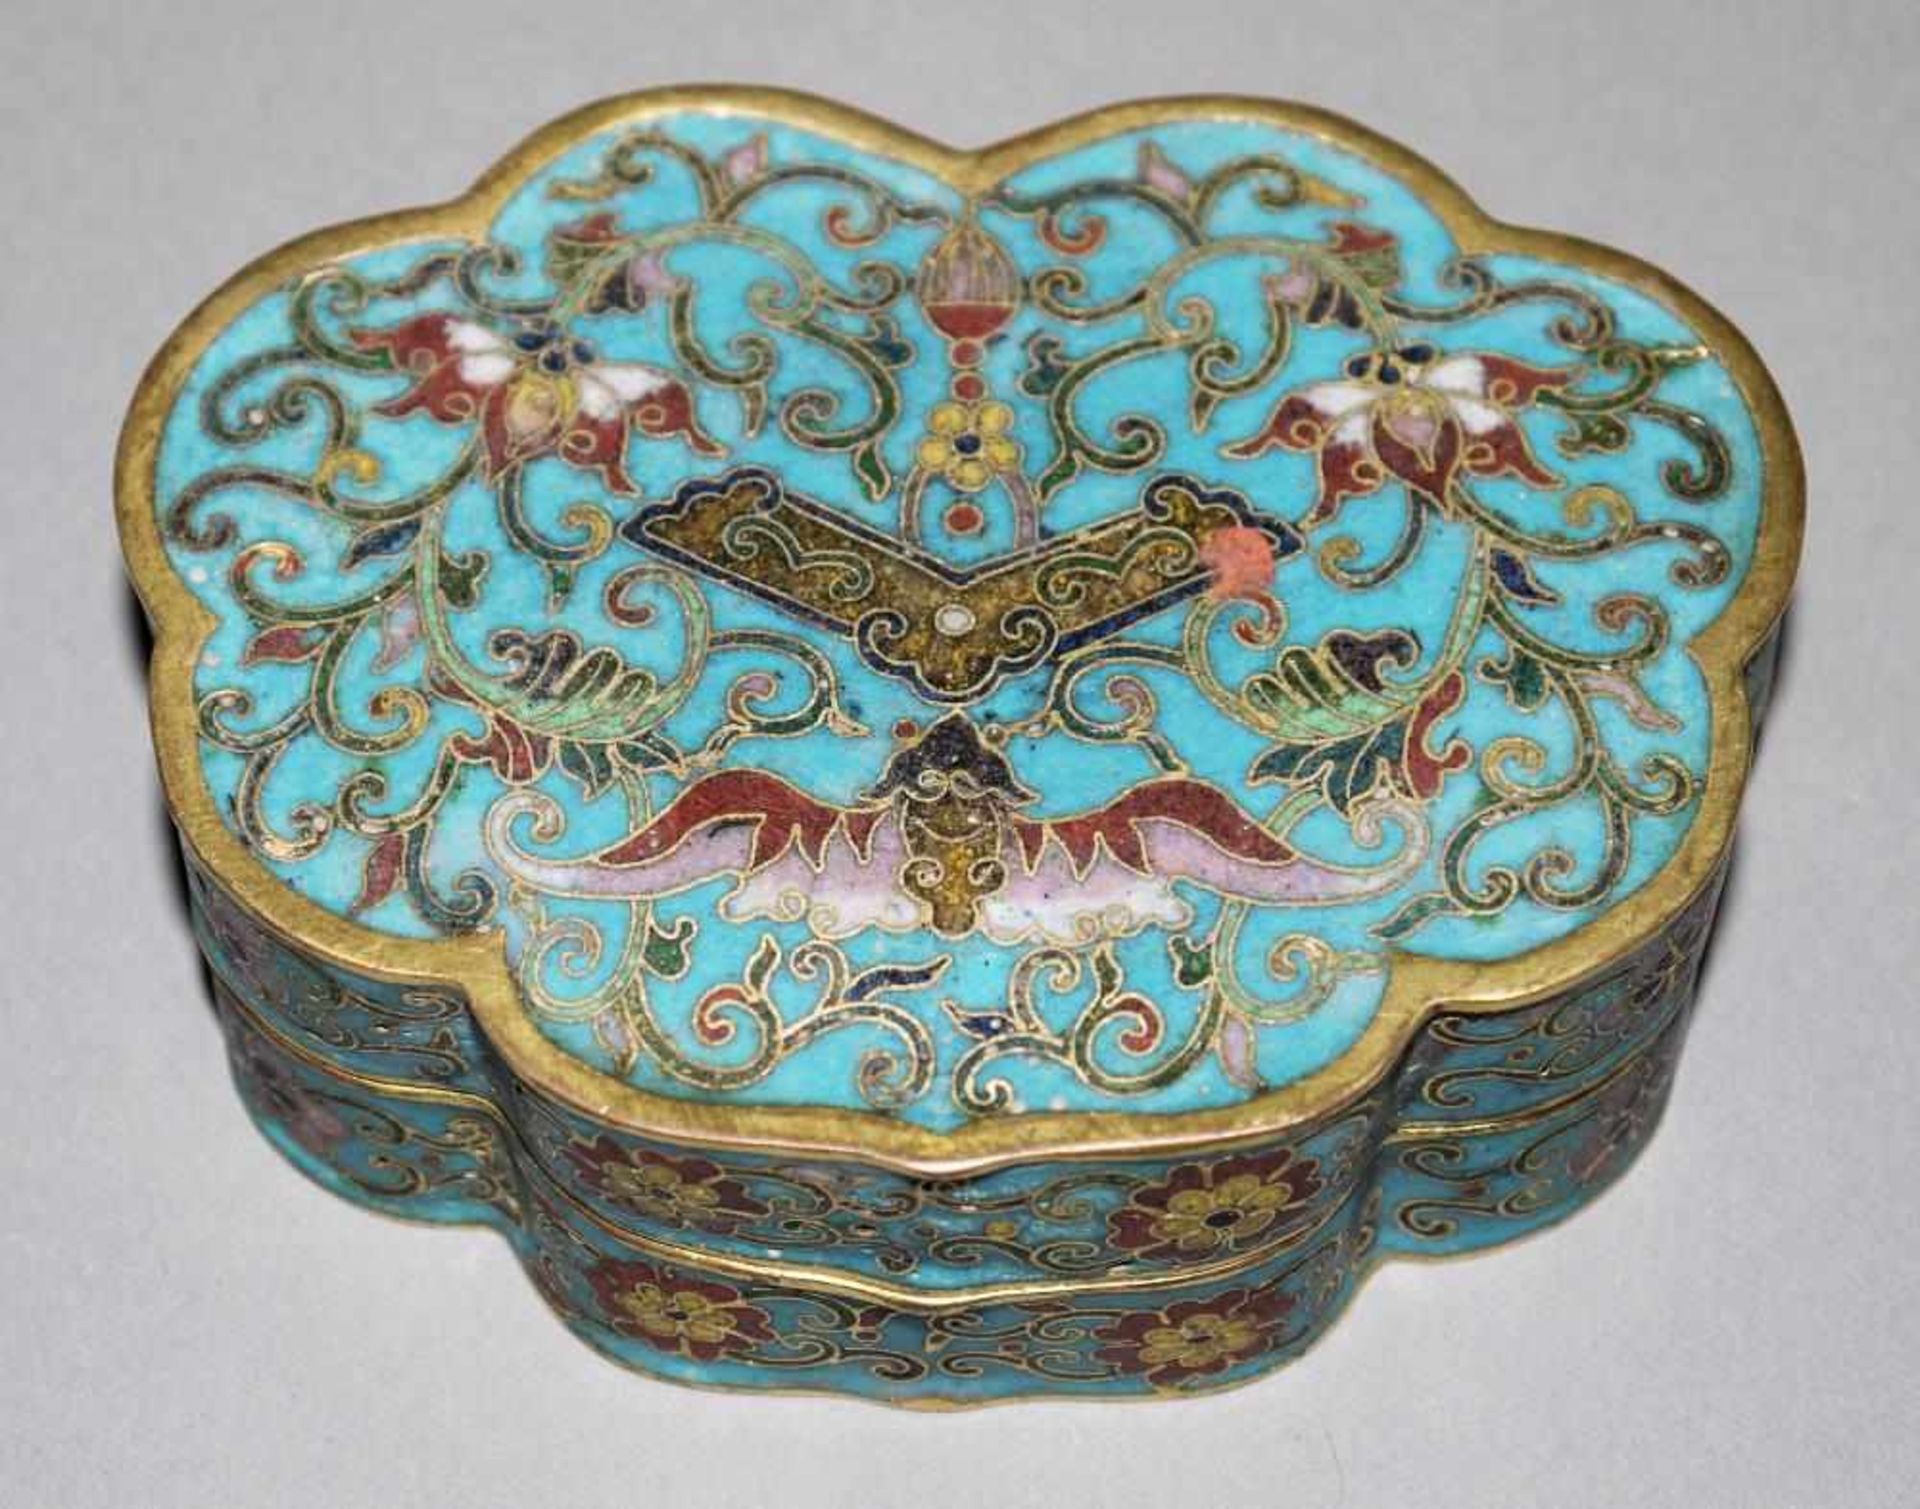 Cloisonné-Dose in Wolkenform, späte Qing-Zeit, China 19. Jh. Dose aus vergoldetem Kupfer mit